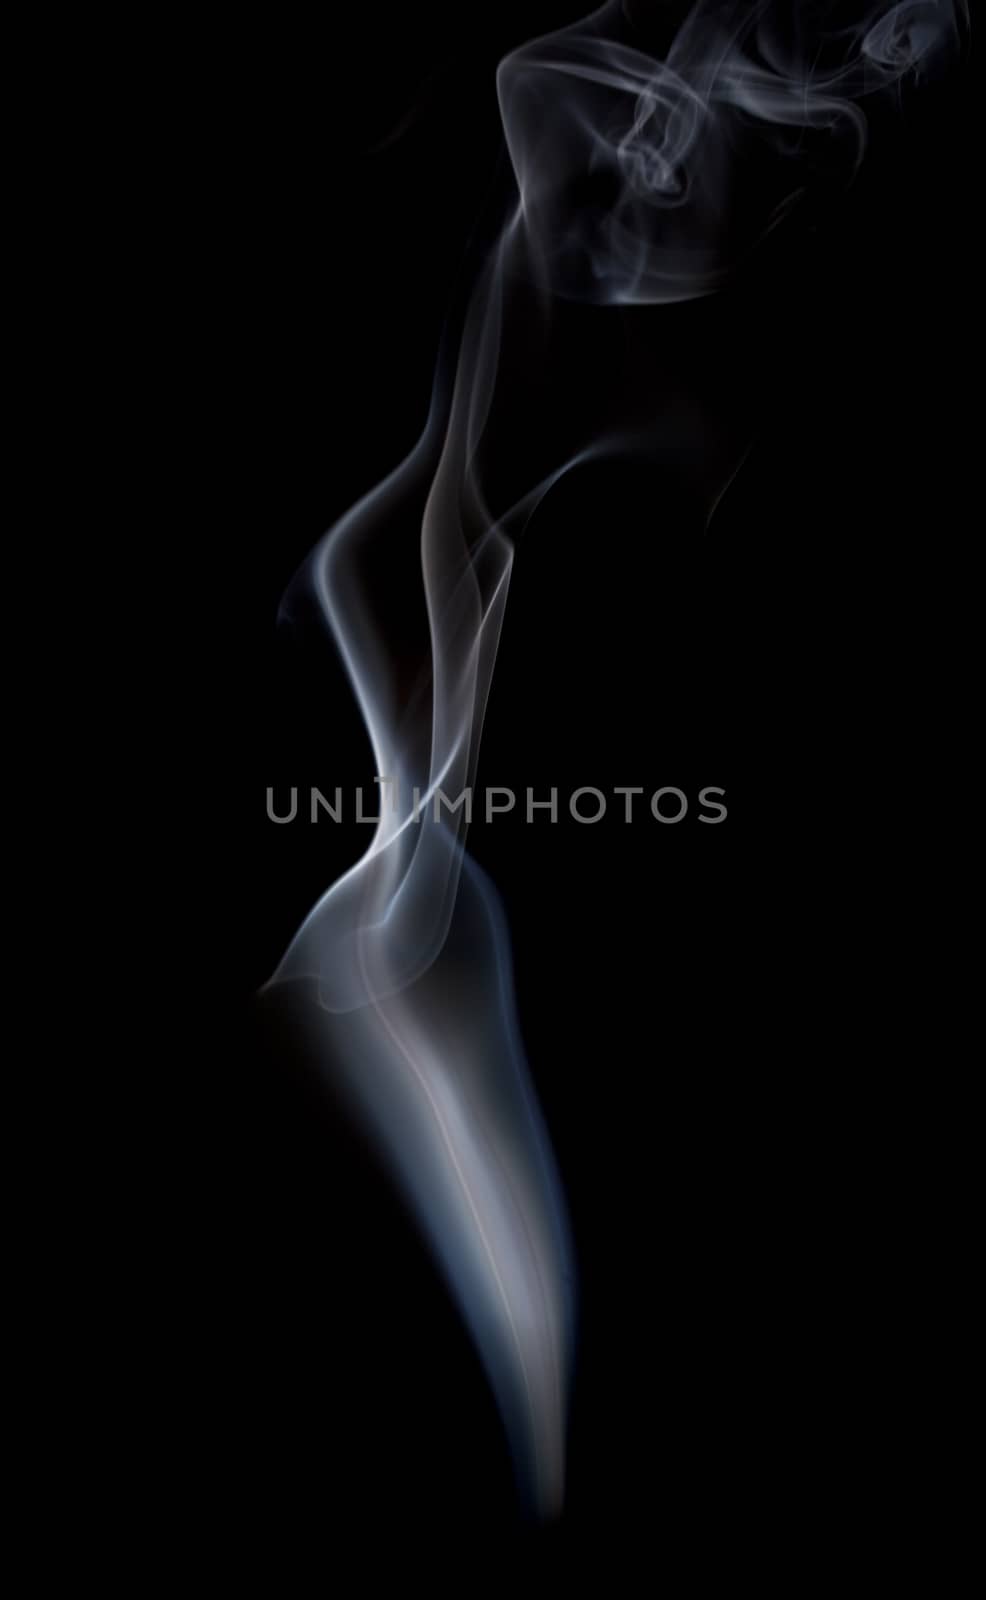 Abstract smoke by Portokalis